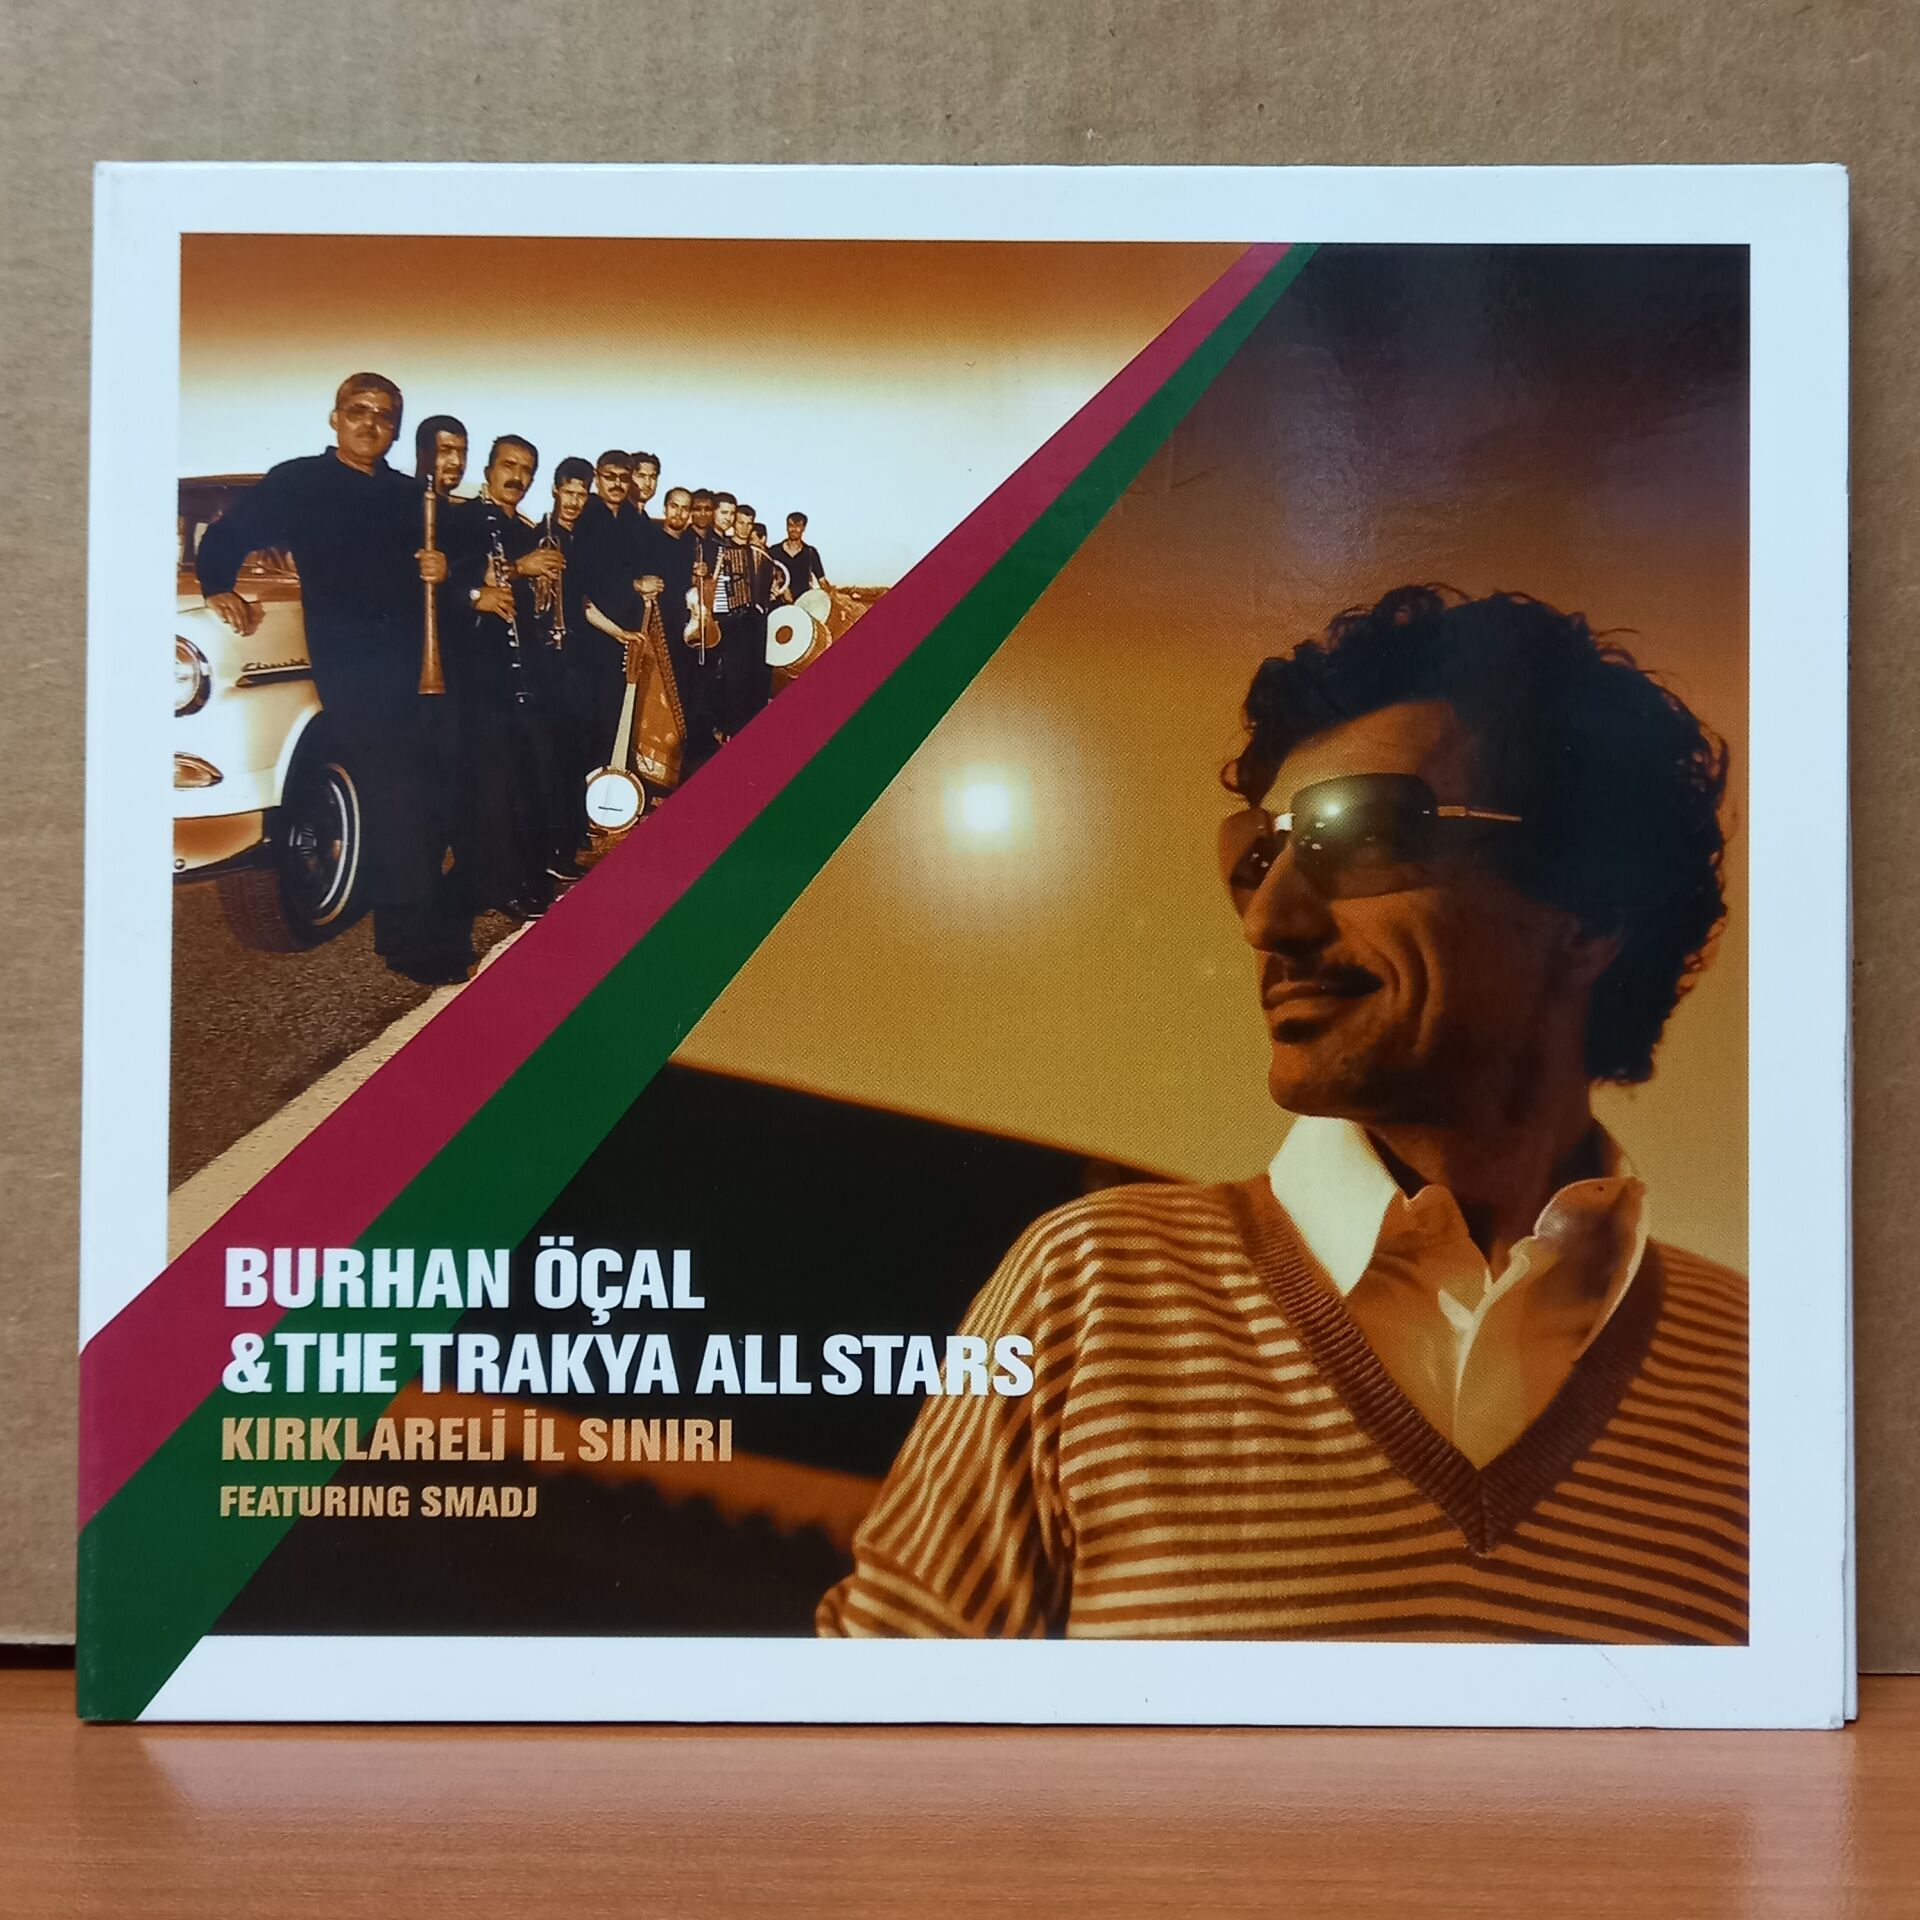 BURHAN ÖÇAL & THE TRAKYA ALL STARS FEATURING SMADJ - KIRKLARELI İL SINIRI (2003) - CD 2.EL